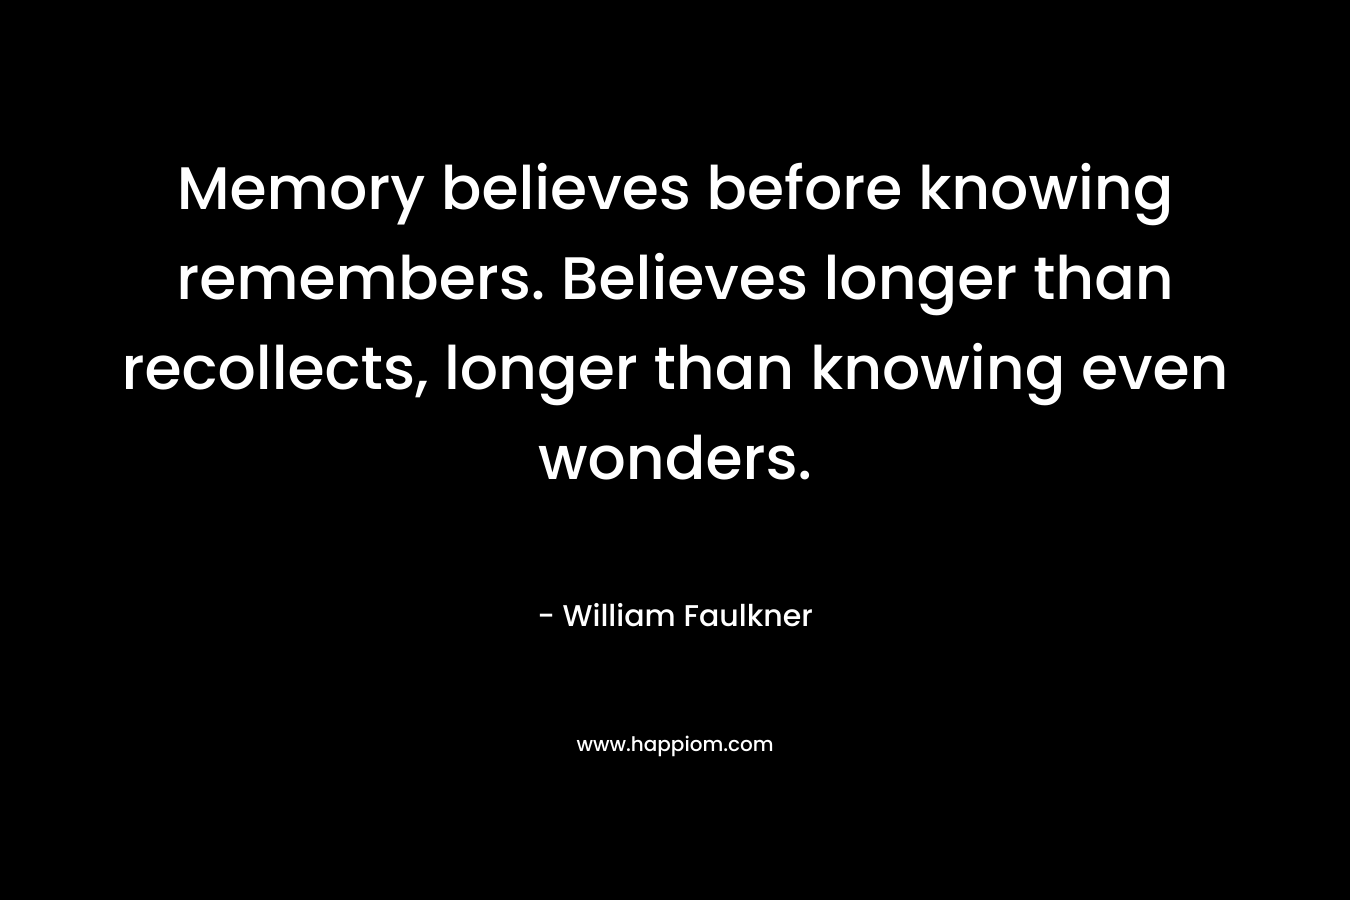 Memory believes before knowing remembers. Believes longer than recollects, longer than knowing even wonders.